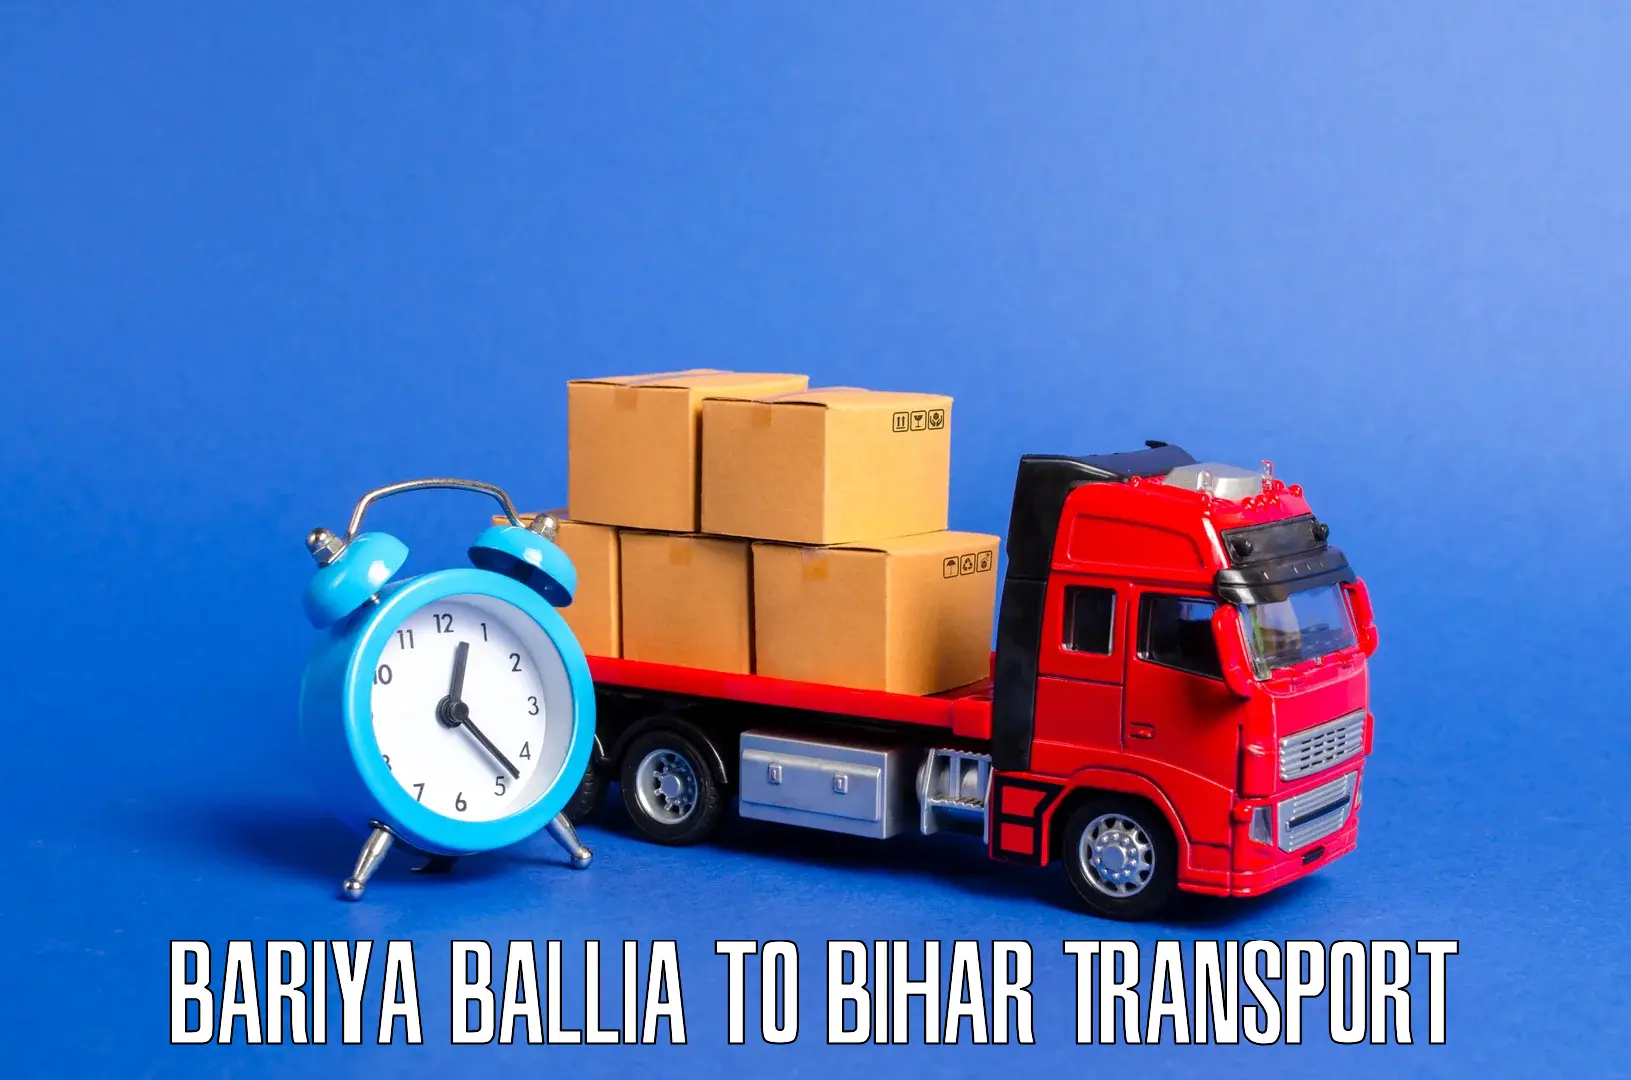 Furniture transport service Bariya Ballia to Bihar